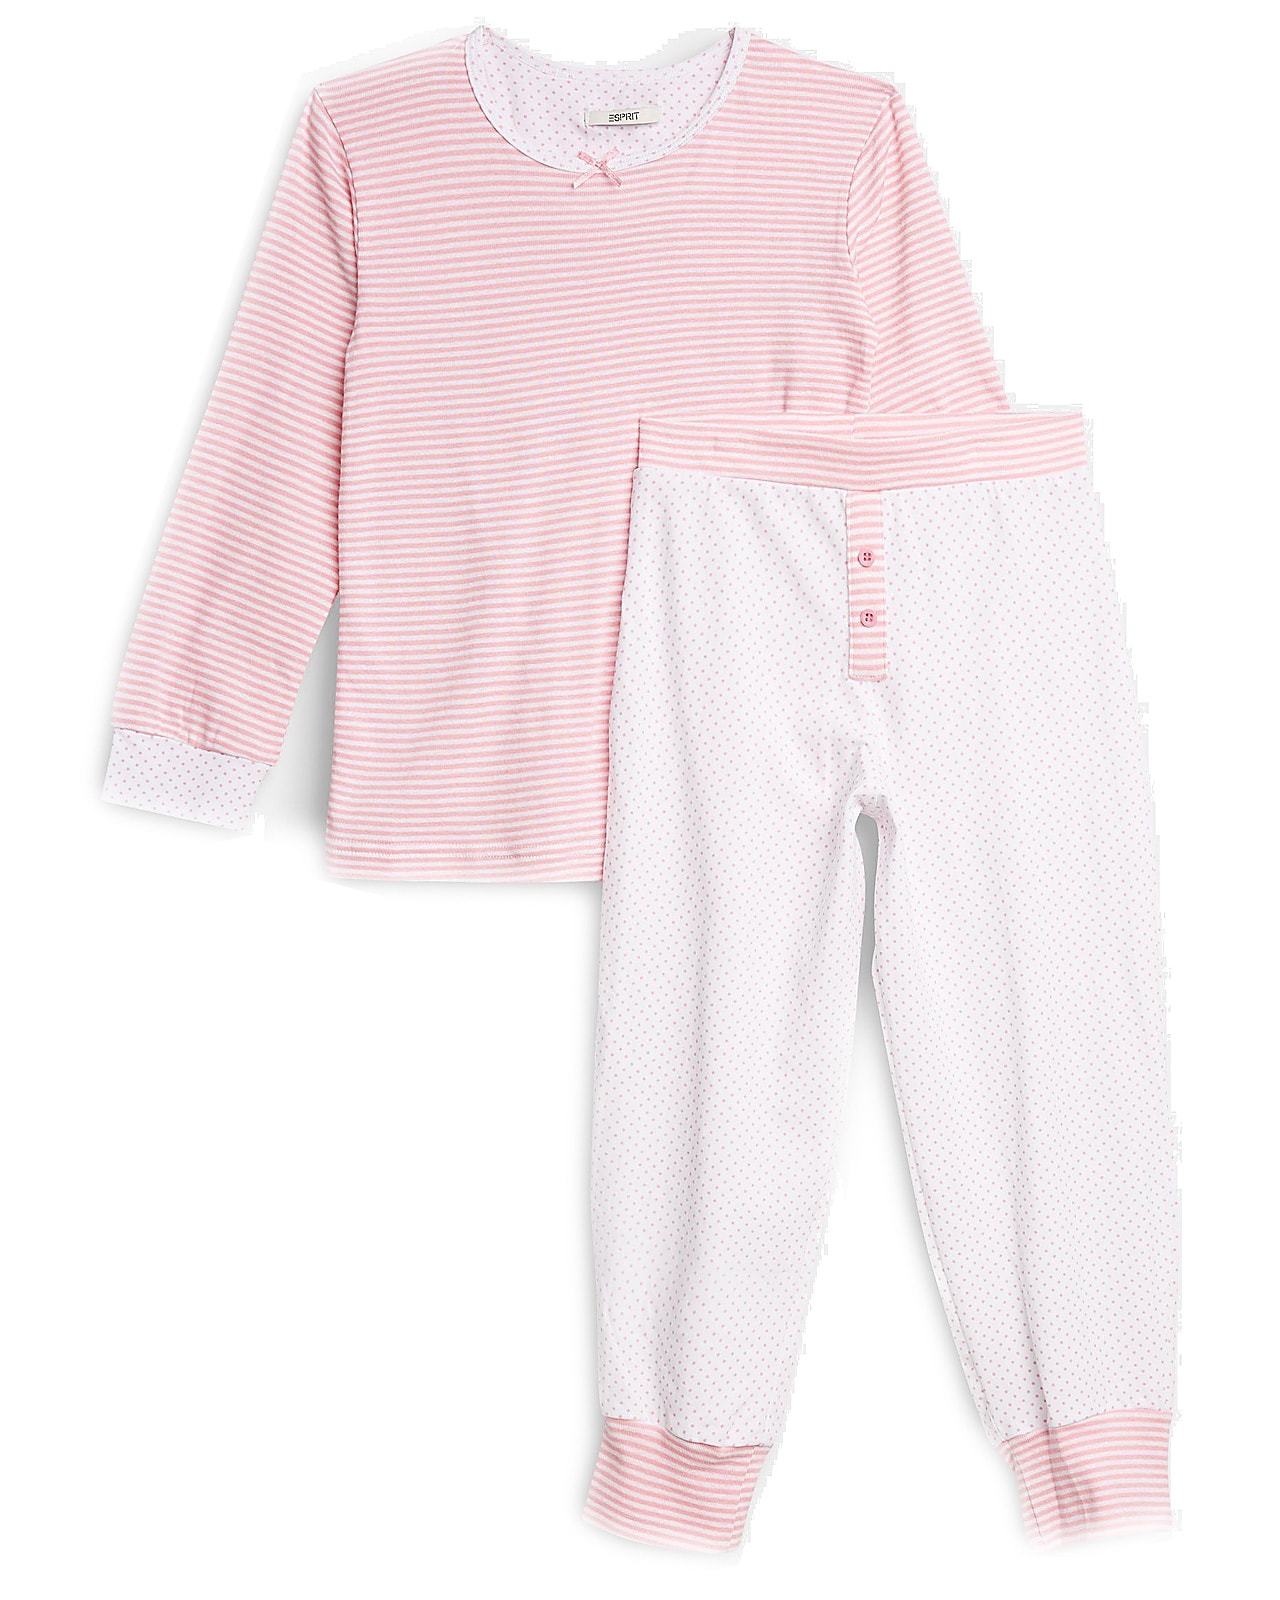 Esprit pyjamassæt, whiterose. Undertøj nattøj til alle børn, tweens, teens og voksne